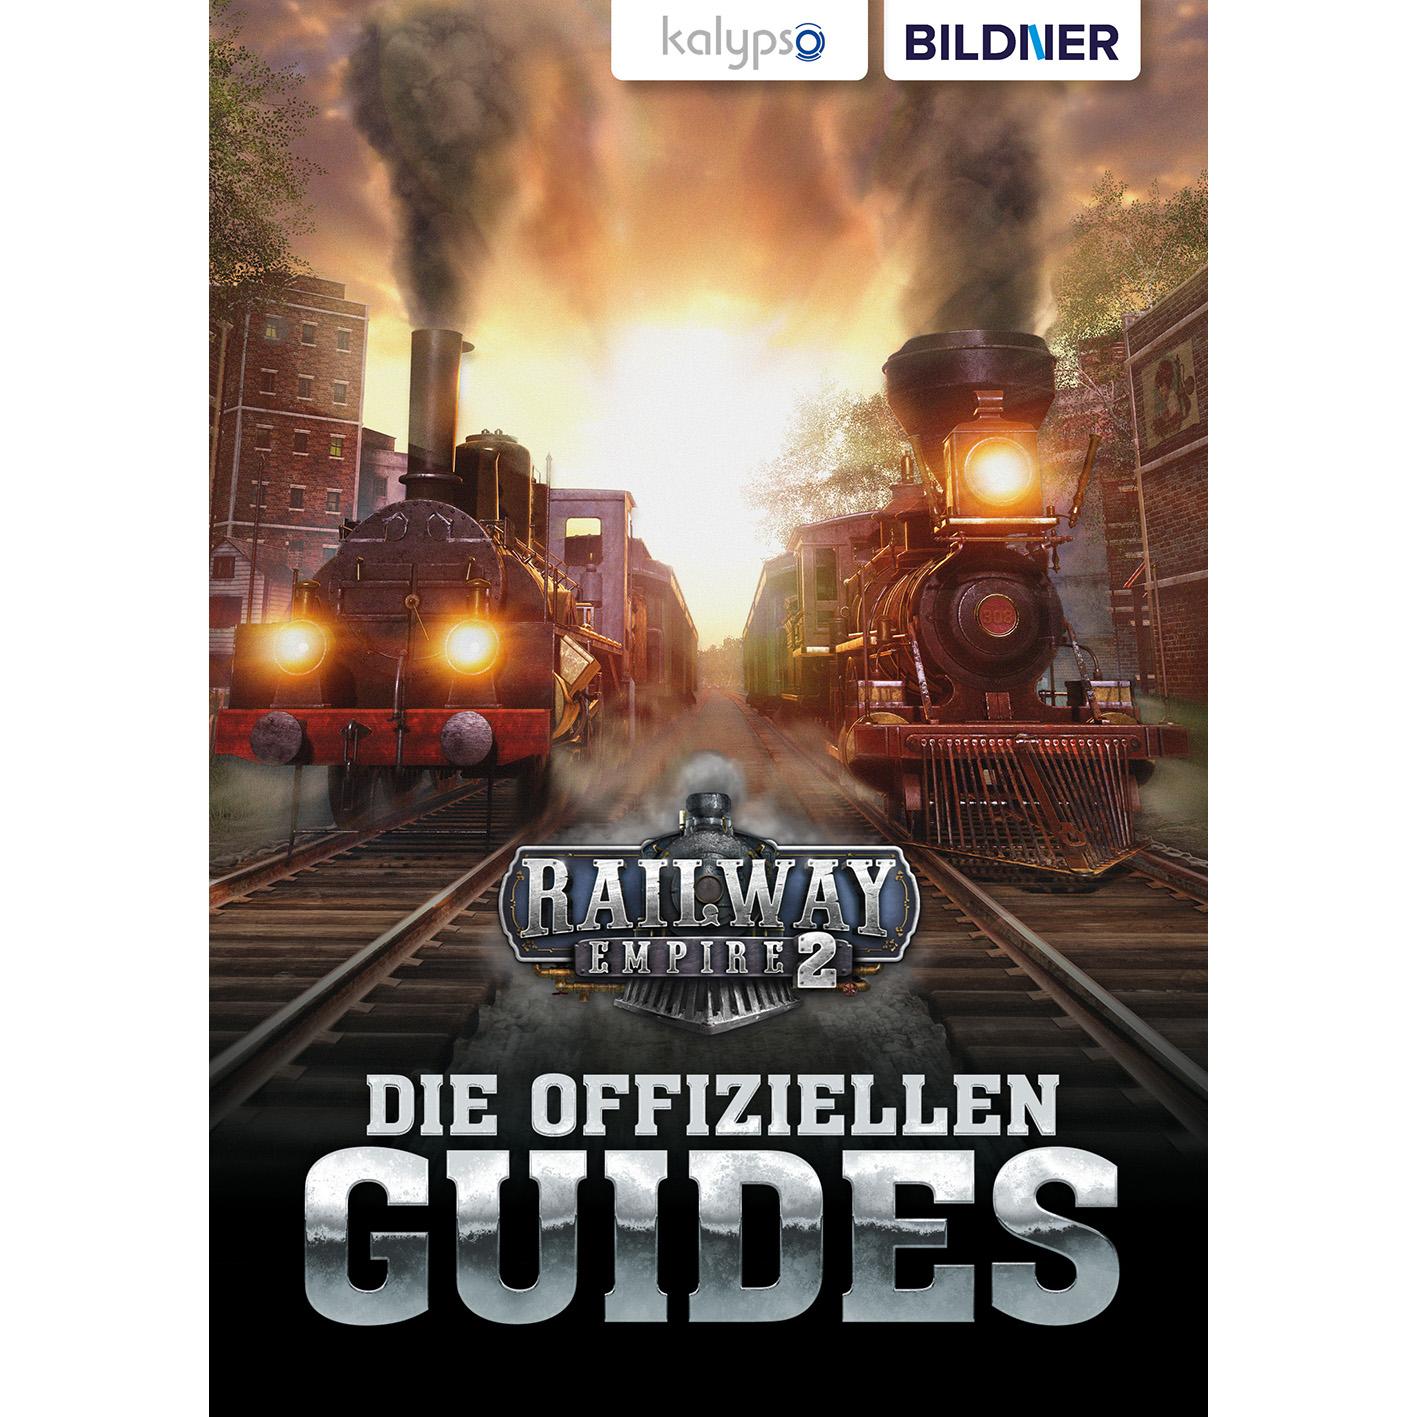 Die Railway Empire 2: Guides Offiziellen